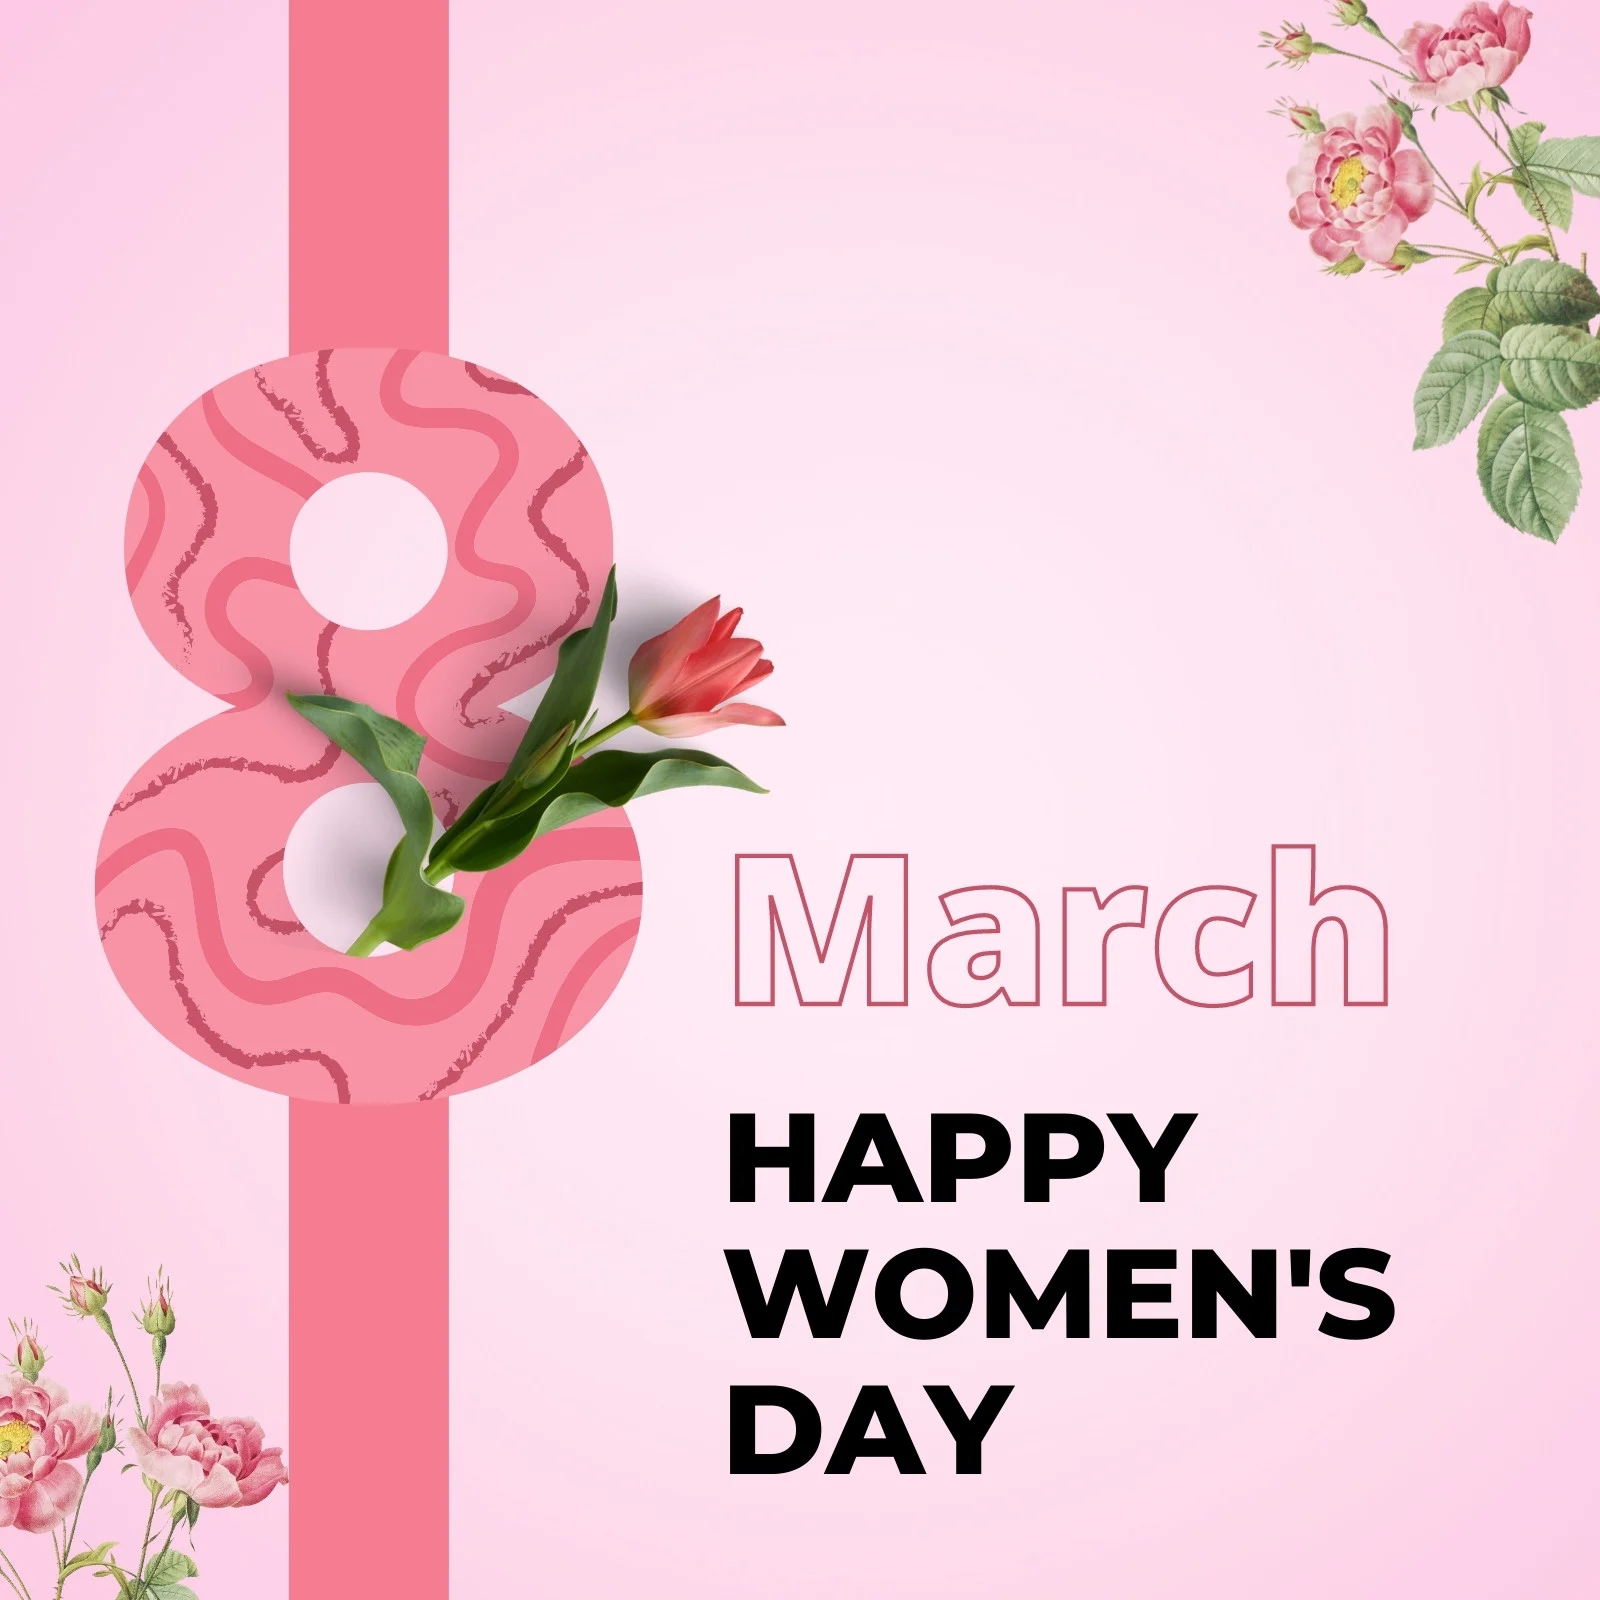 Chúc mừng ngày quốc tế phụ nữ!